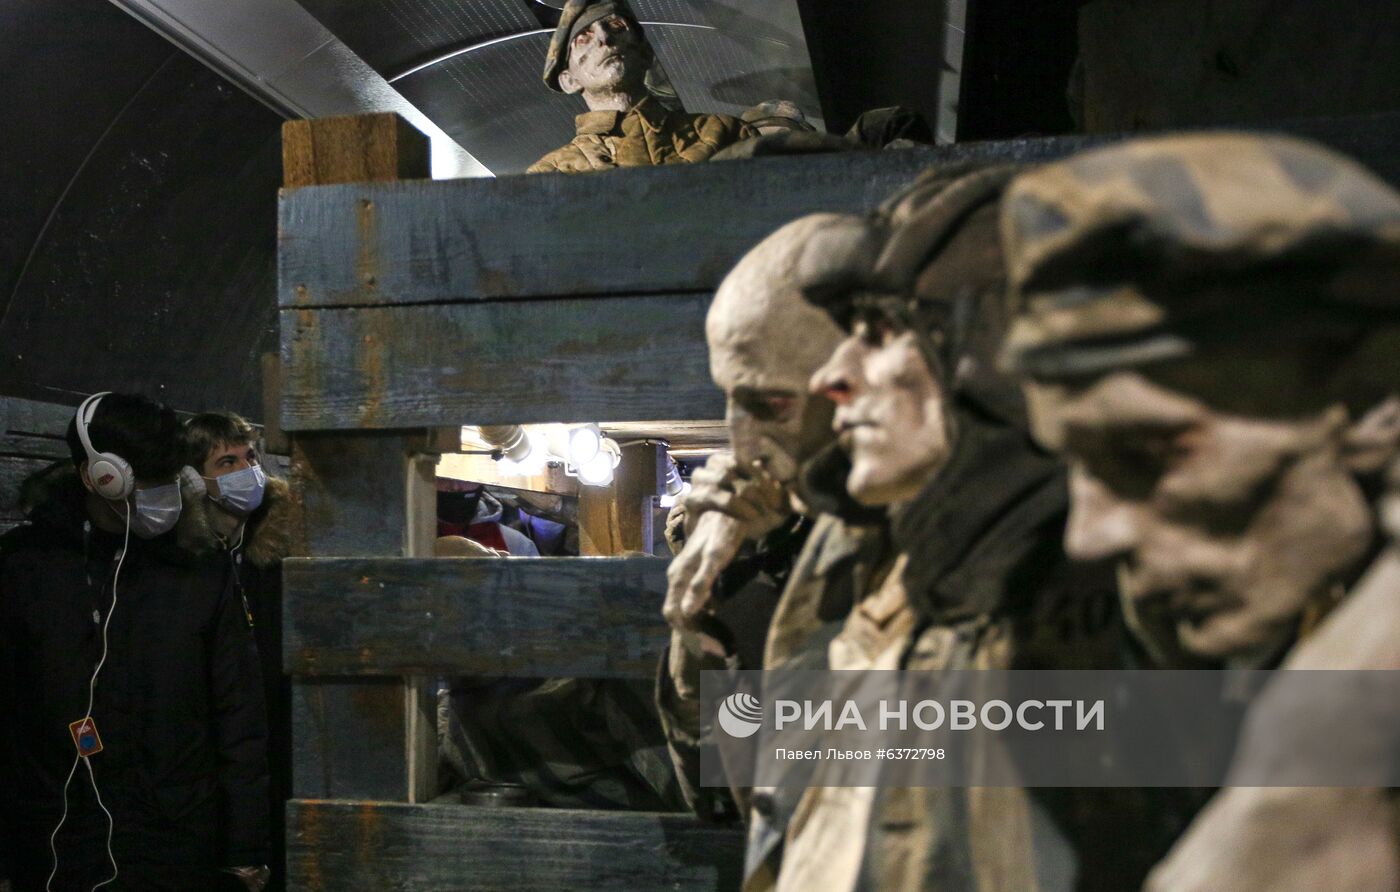 Иммерсивный музей "Поезд Победы" в Мурманске